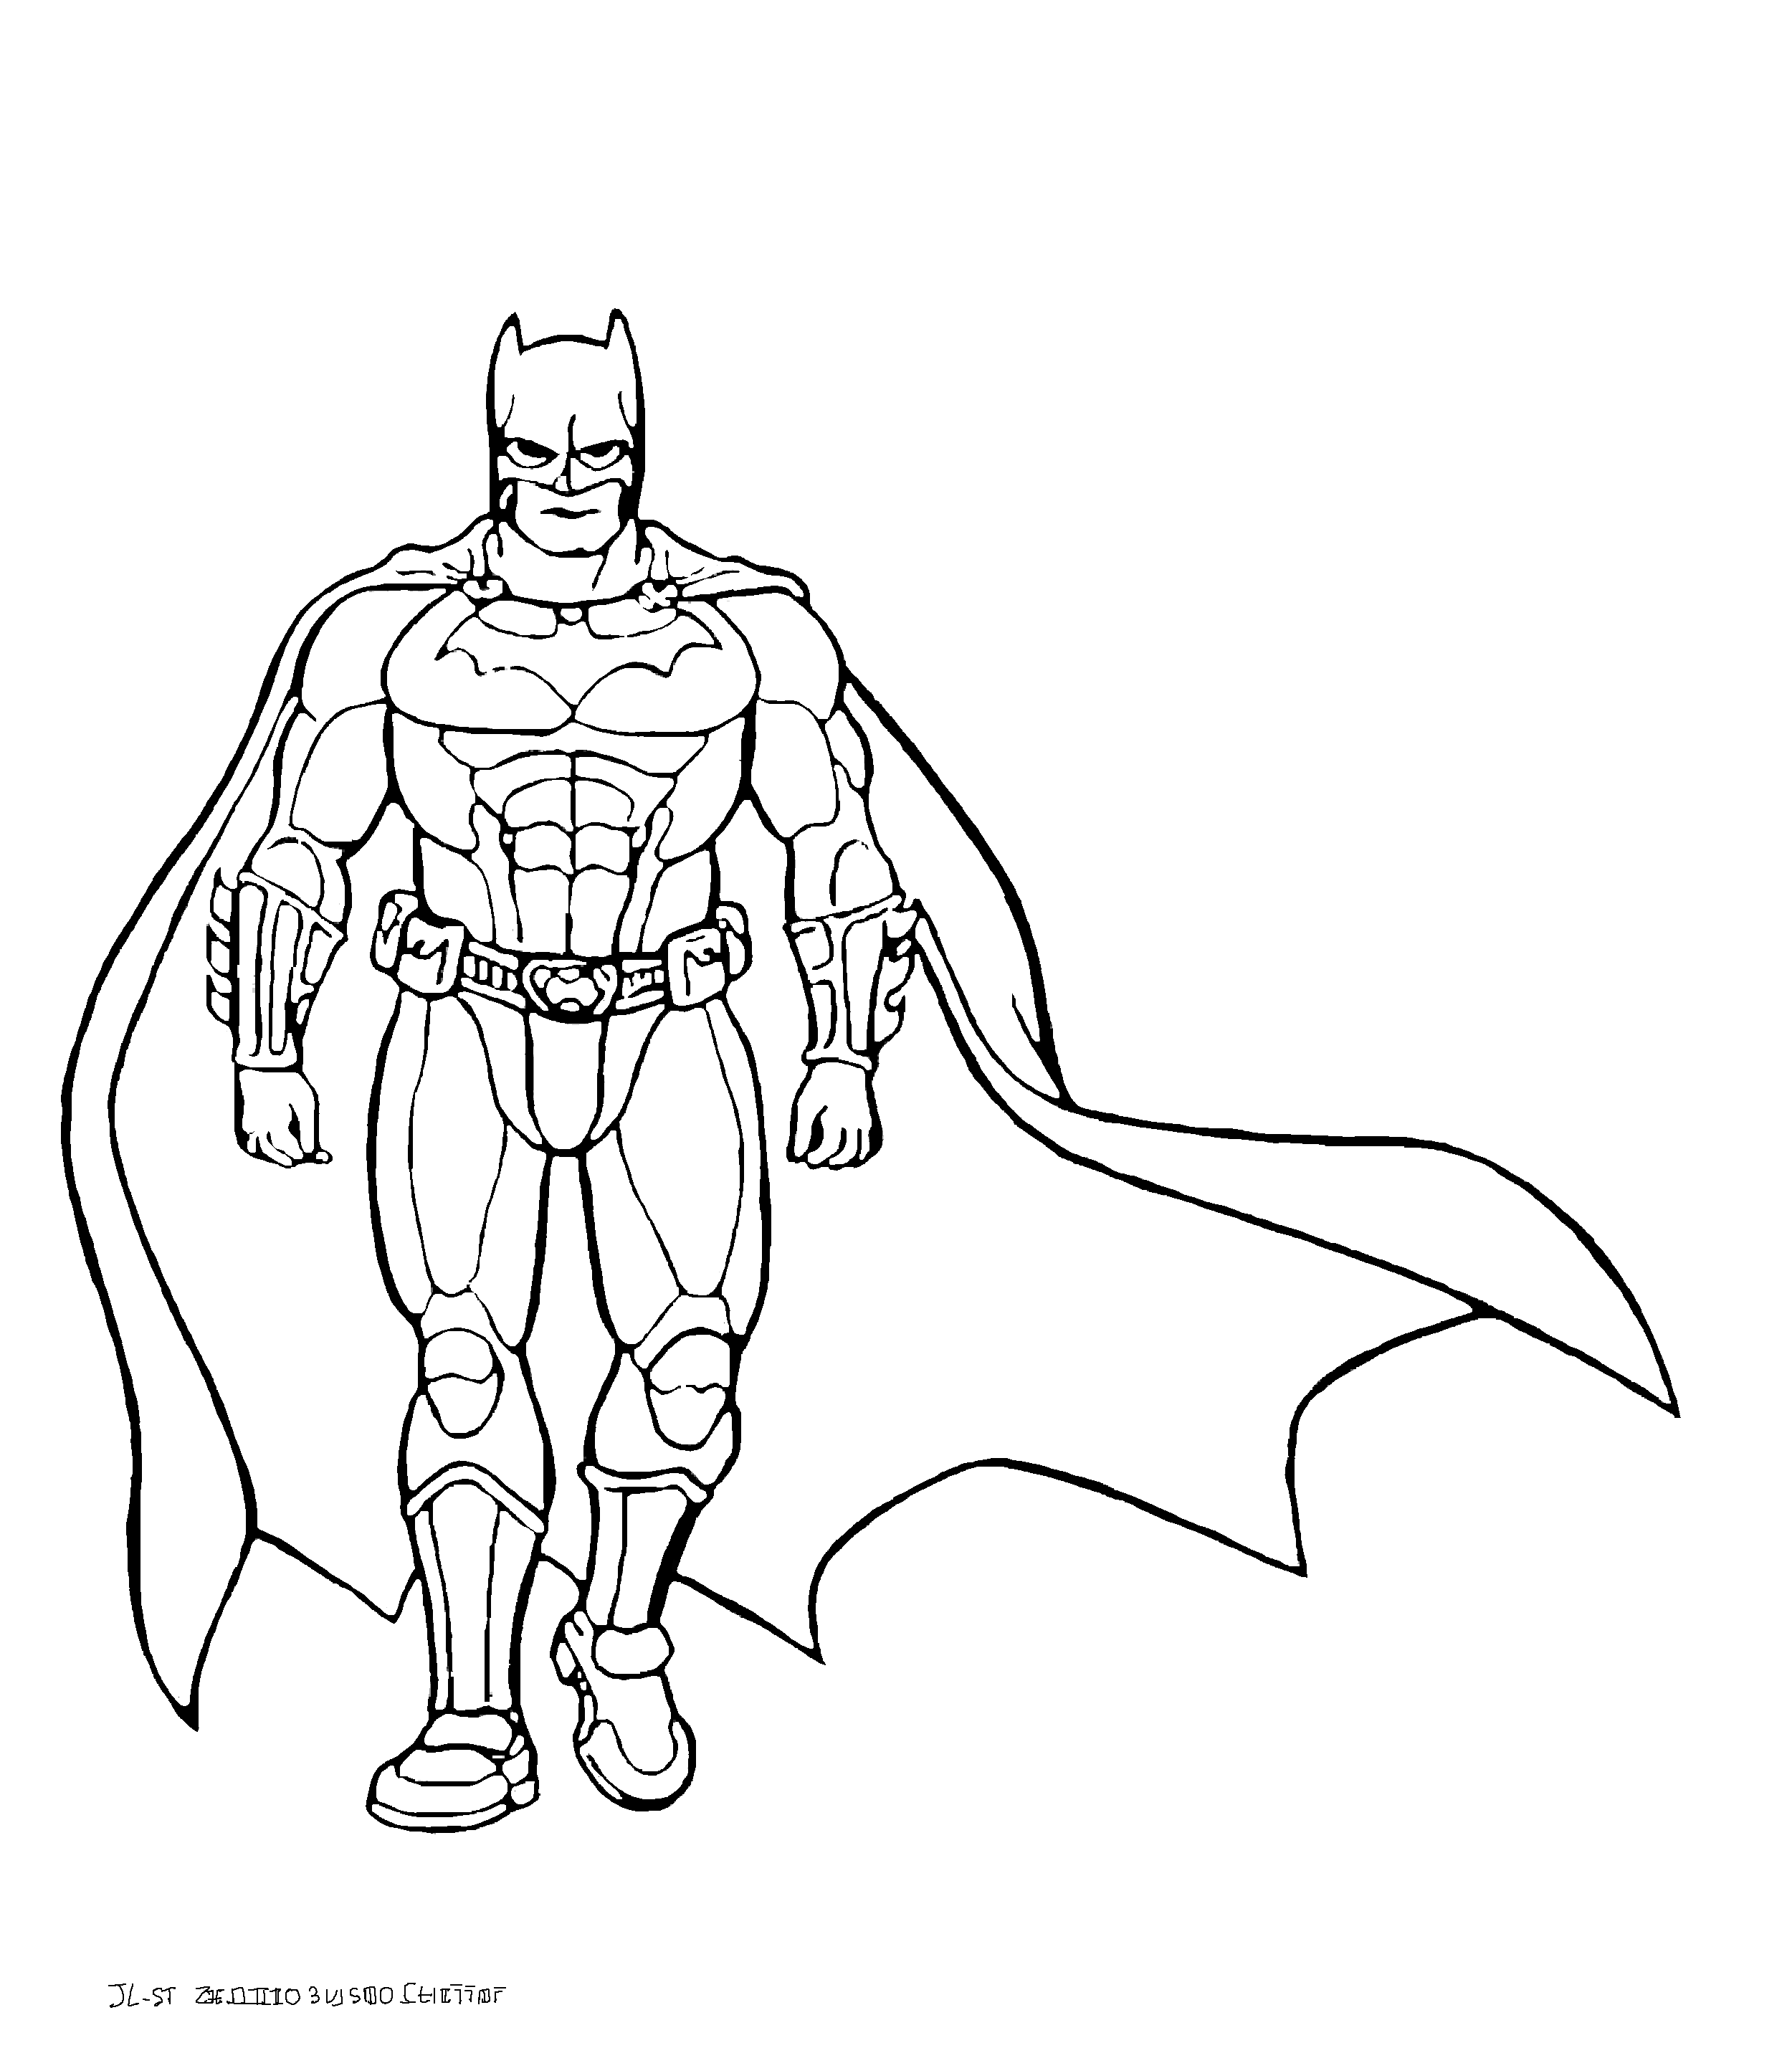 Coloração do Batman simples